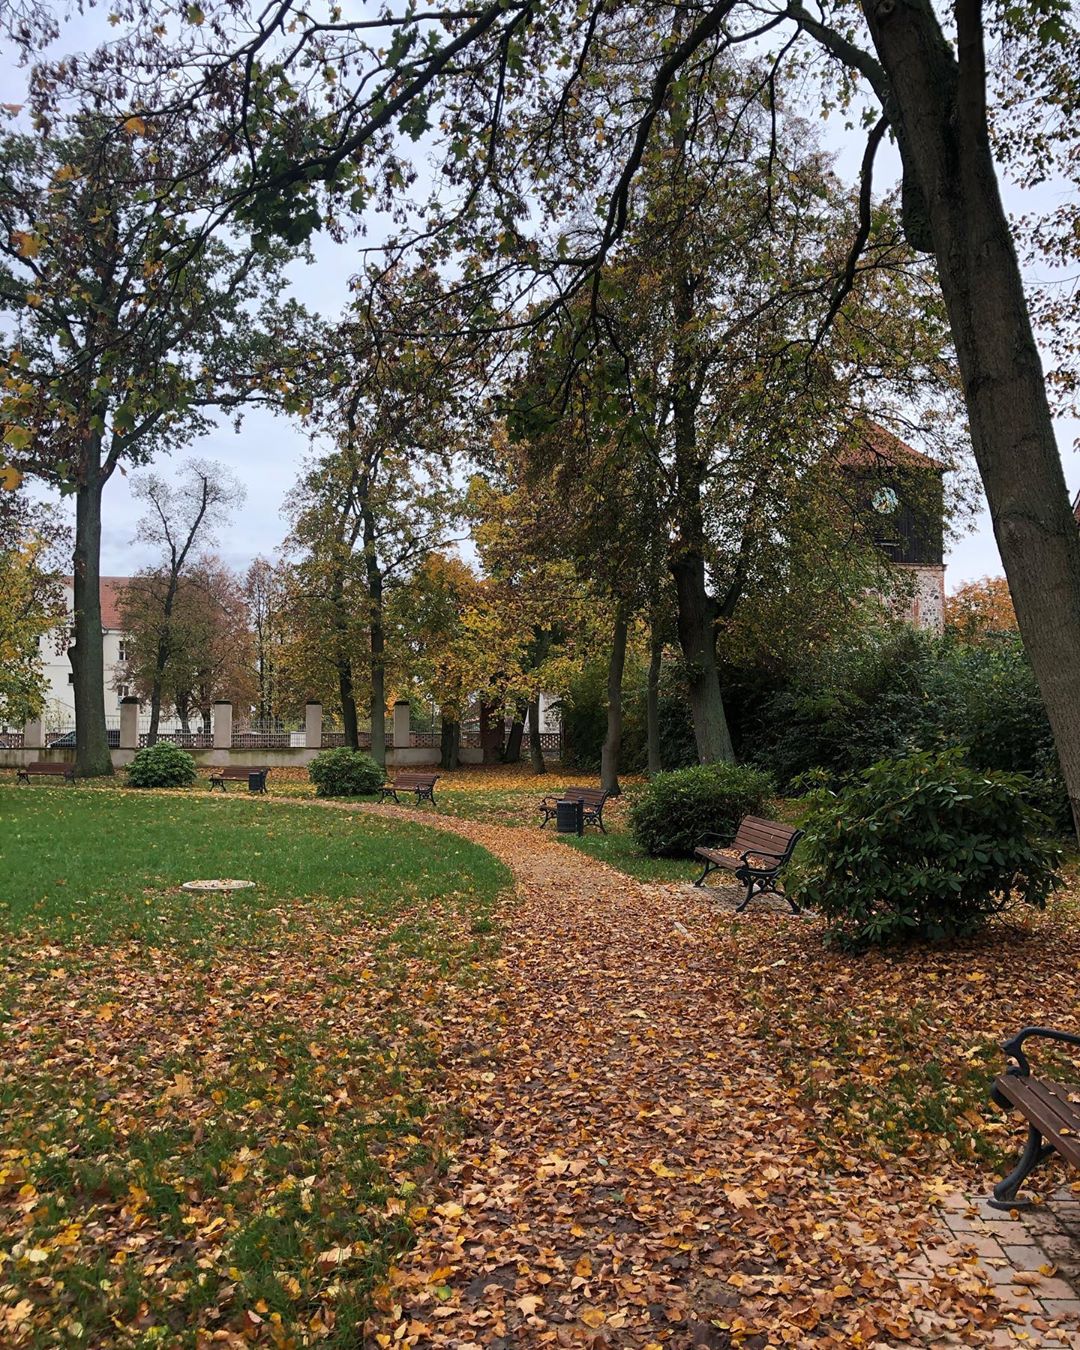 Herbst im Schlosspark Lichterfelde 🤗🍁 #autumn #leaves #park #trees #schorfheide #lichterfelde #barnim